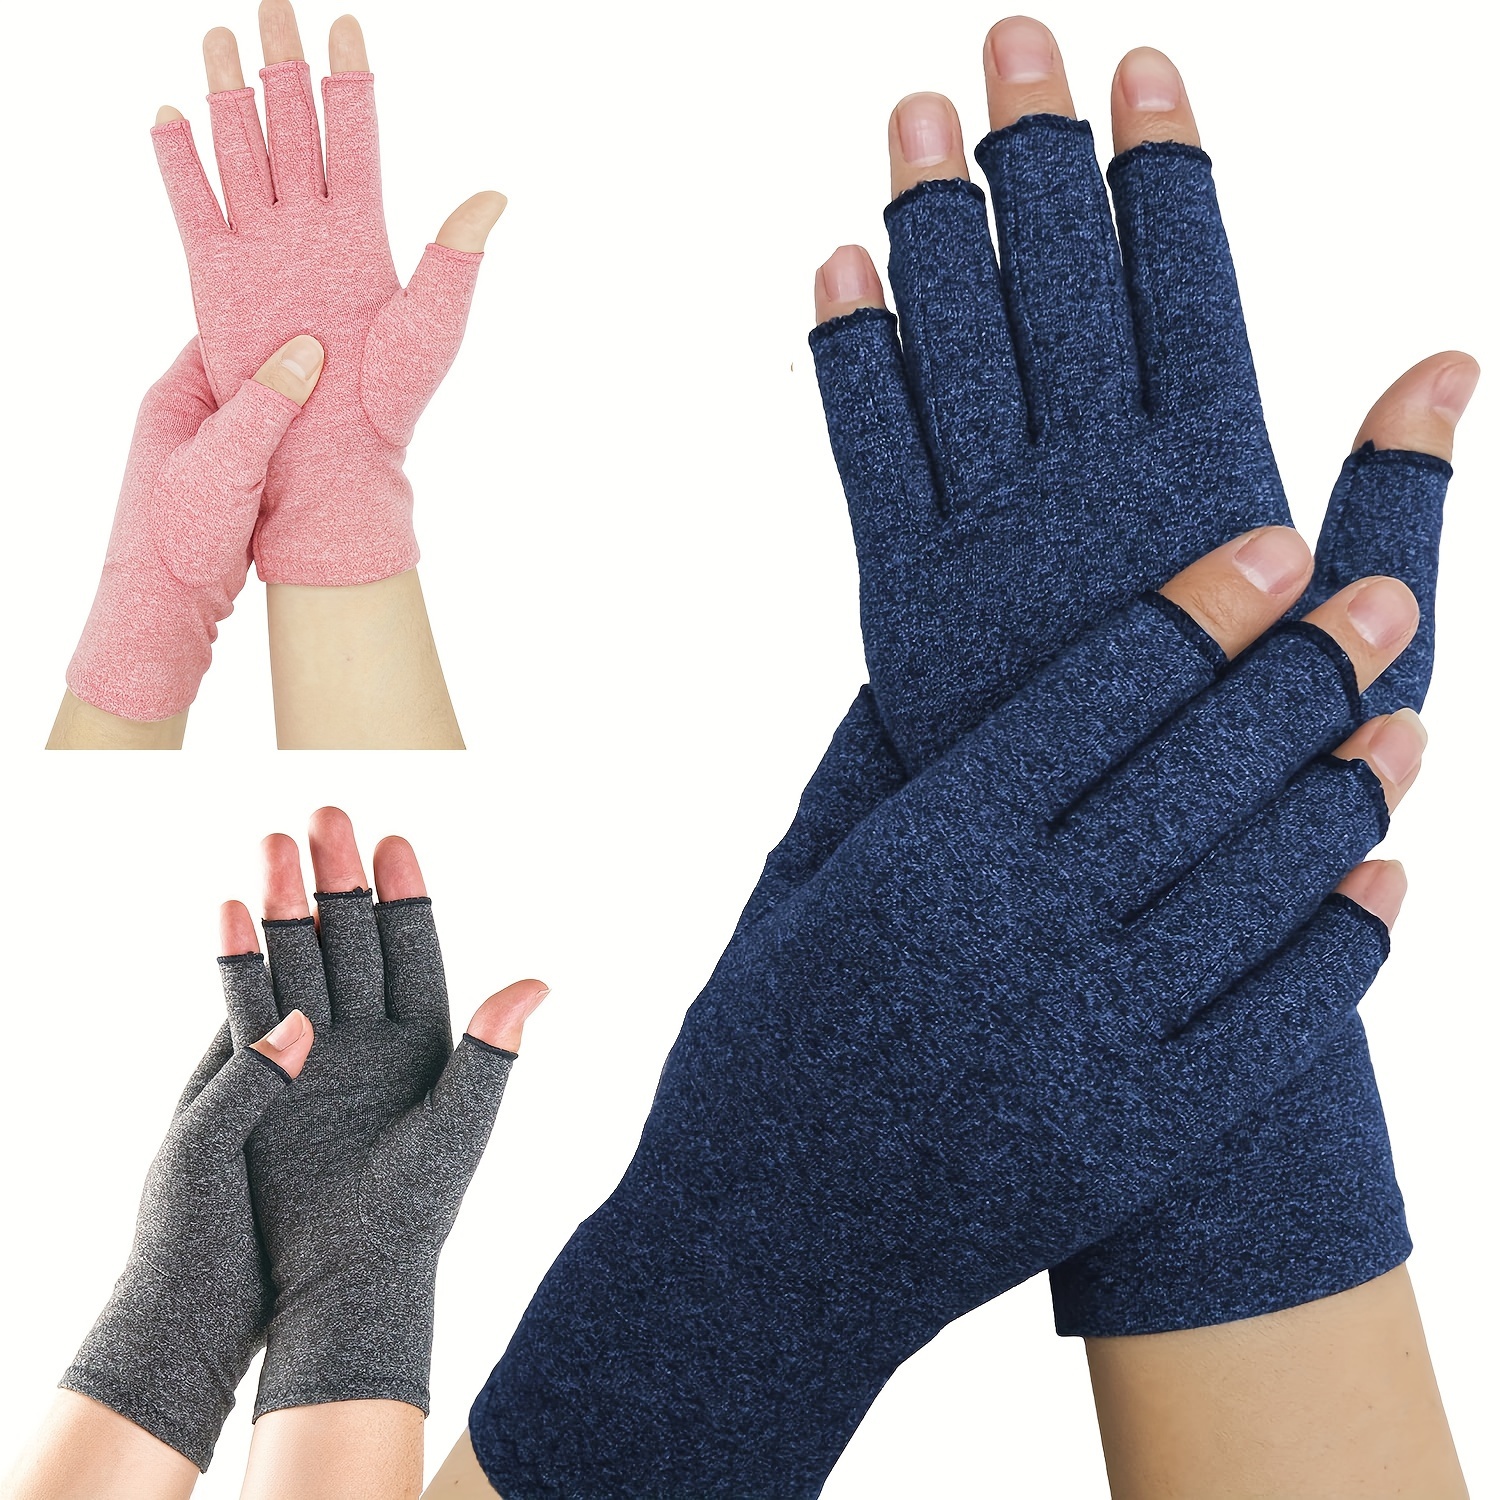  BracEasy Compression Gloves: Open-Fingertip Arthritis